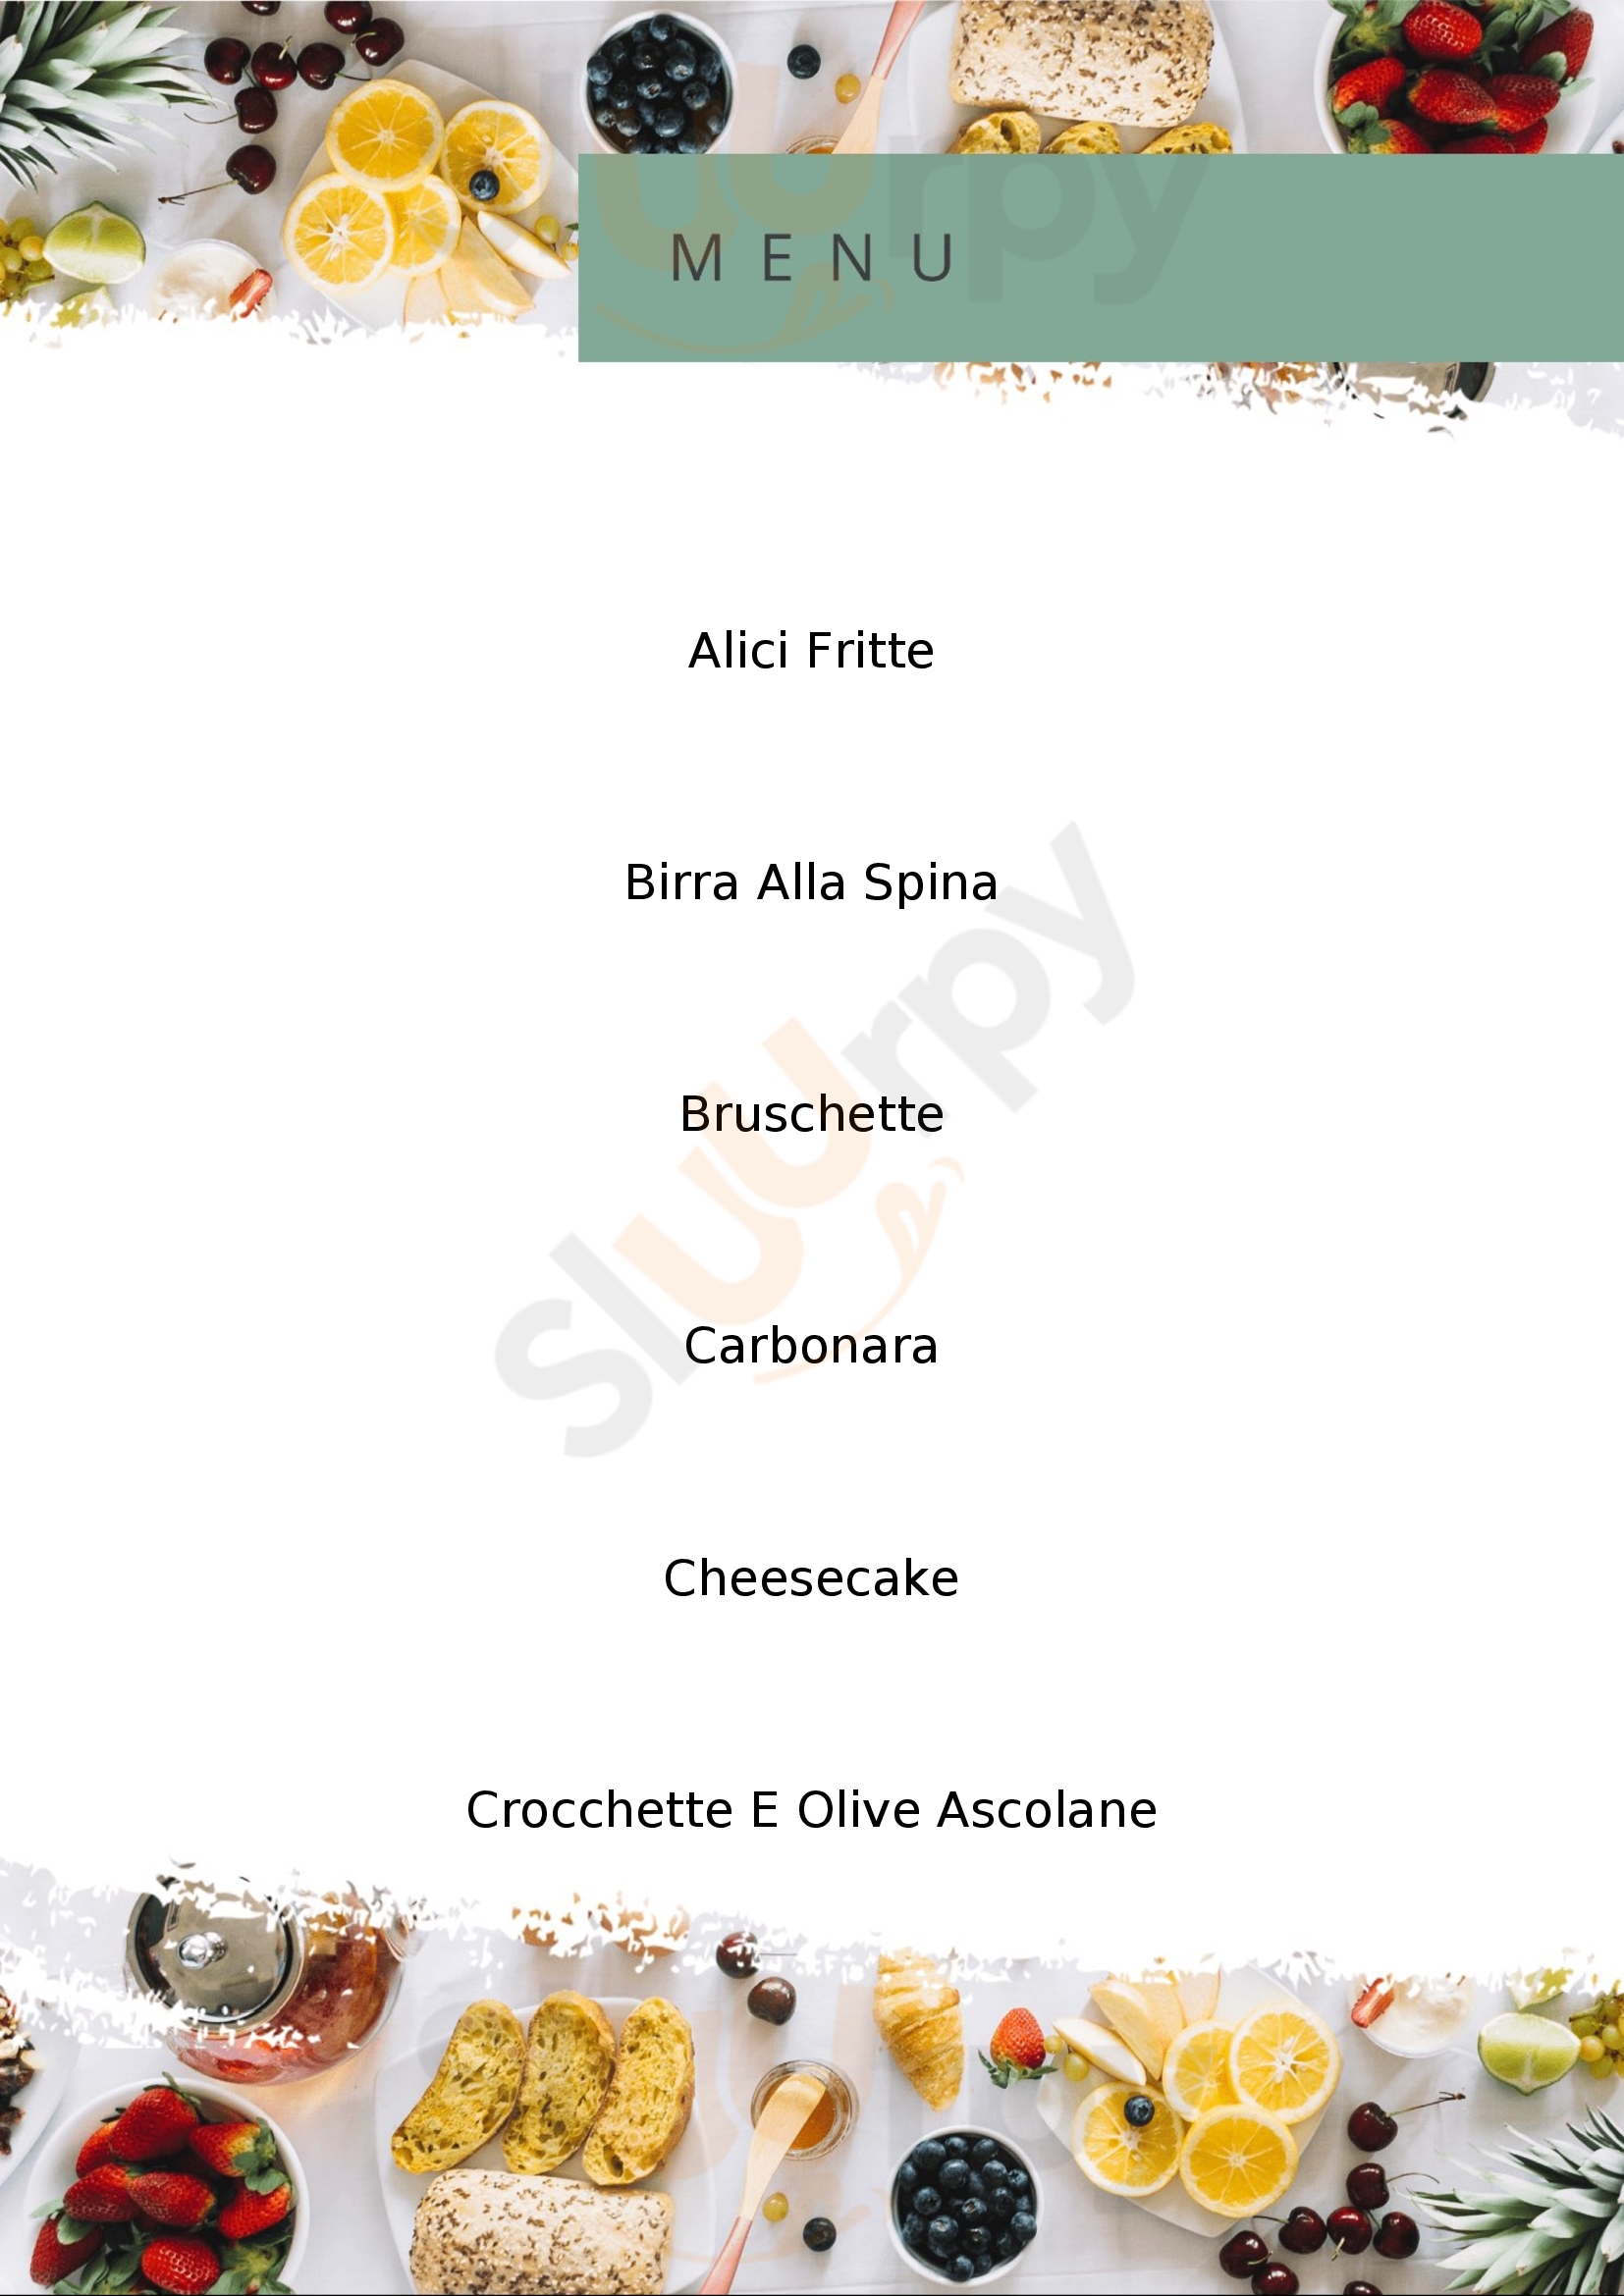 Il Nido | pizzeria & ristorante Pomezia menù 1 pagina